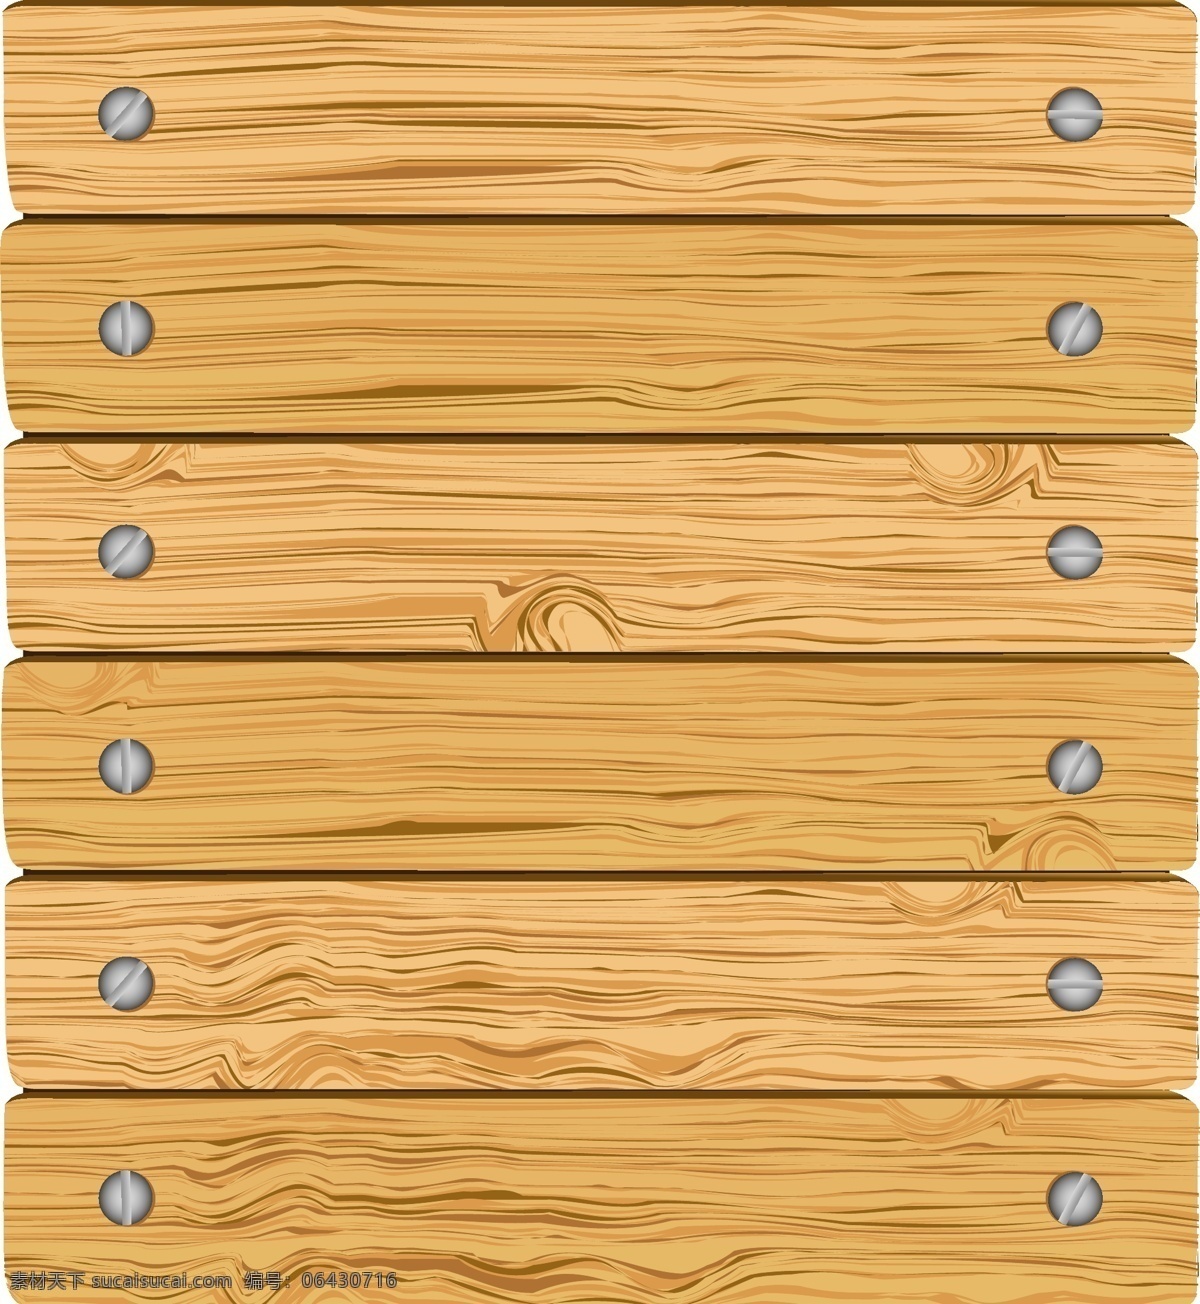 木板 木纹 木地板 彩色木板 木质纹理 wood 手绘木板 逼真木板 背景底纹 矢量 底纹边框